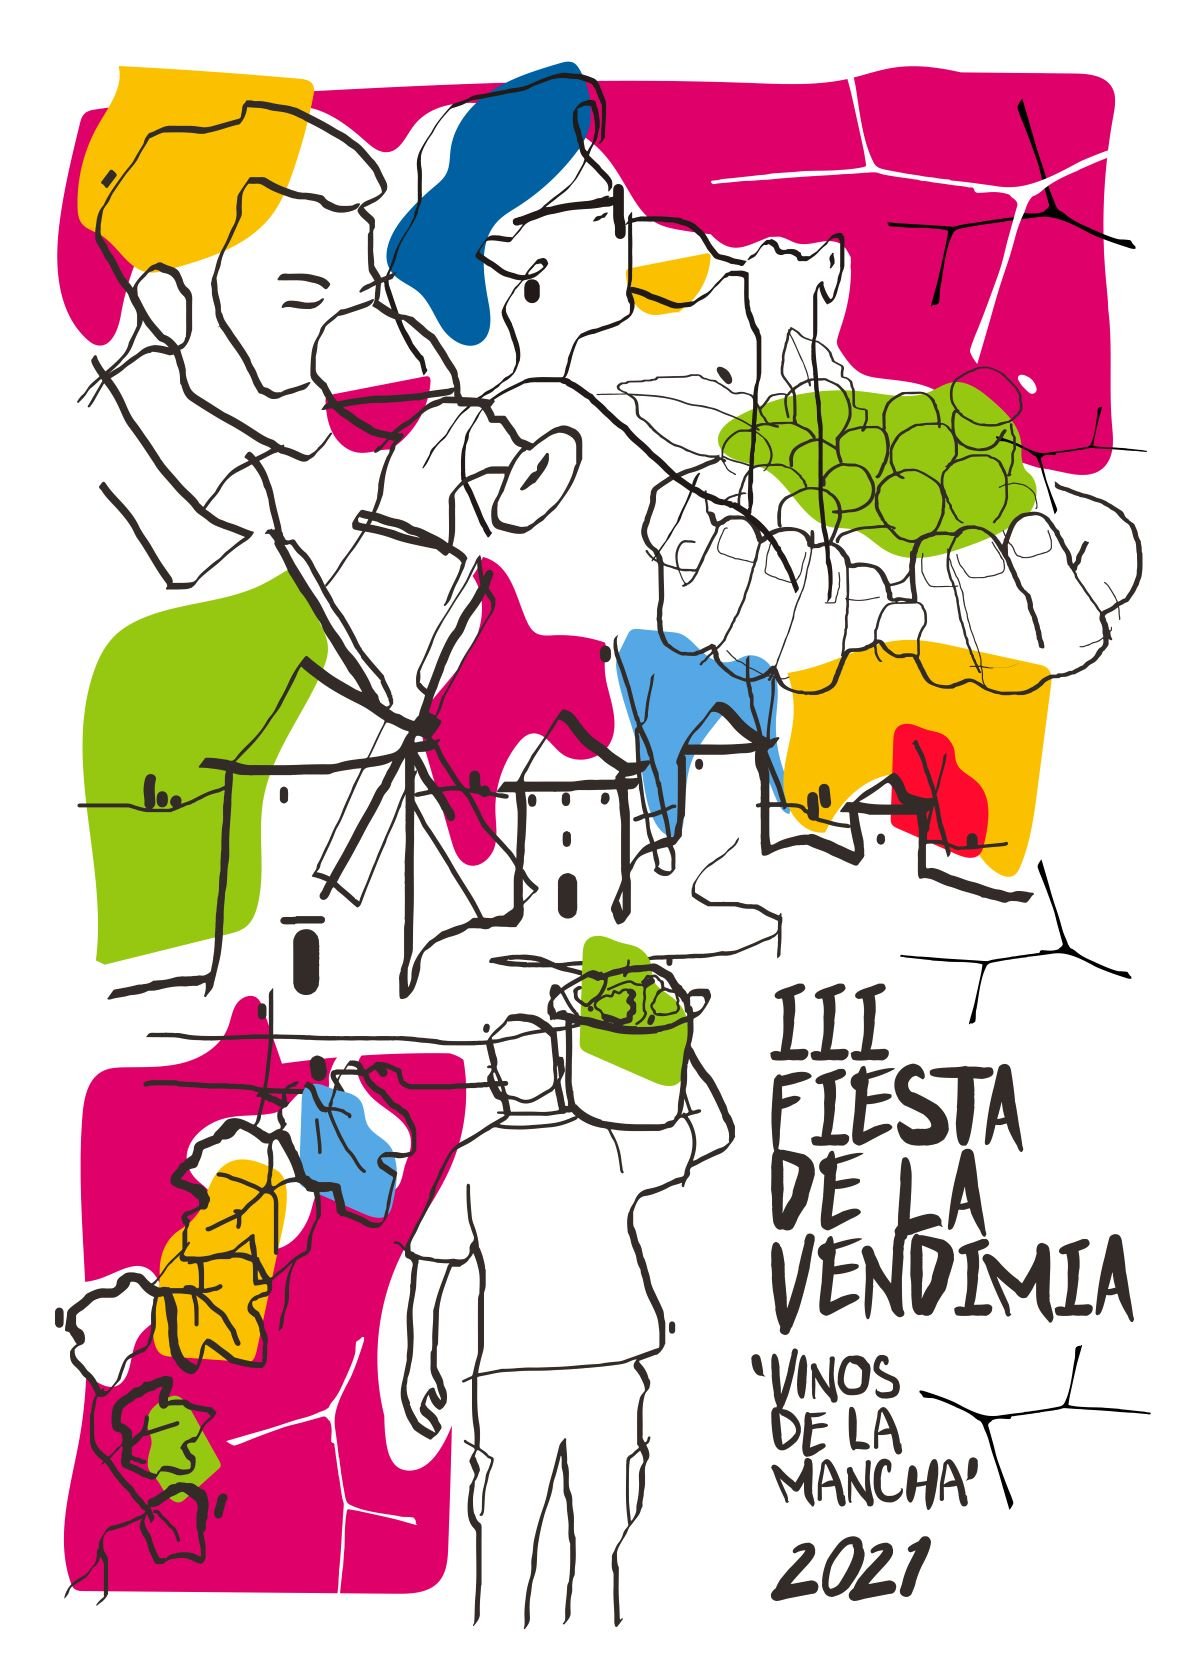 Los vinos DO La Mancha ya tienen su cartel para la III Fiesta de la Vendimia 2021